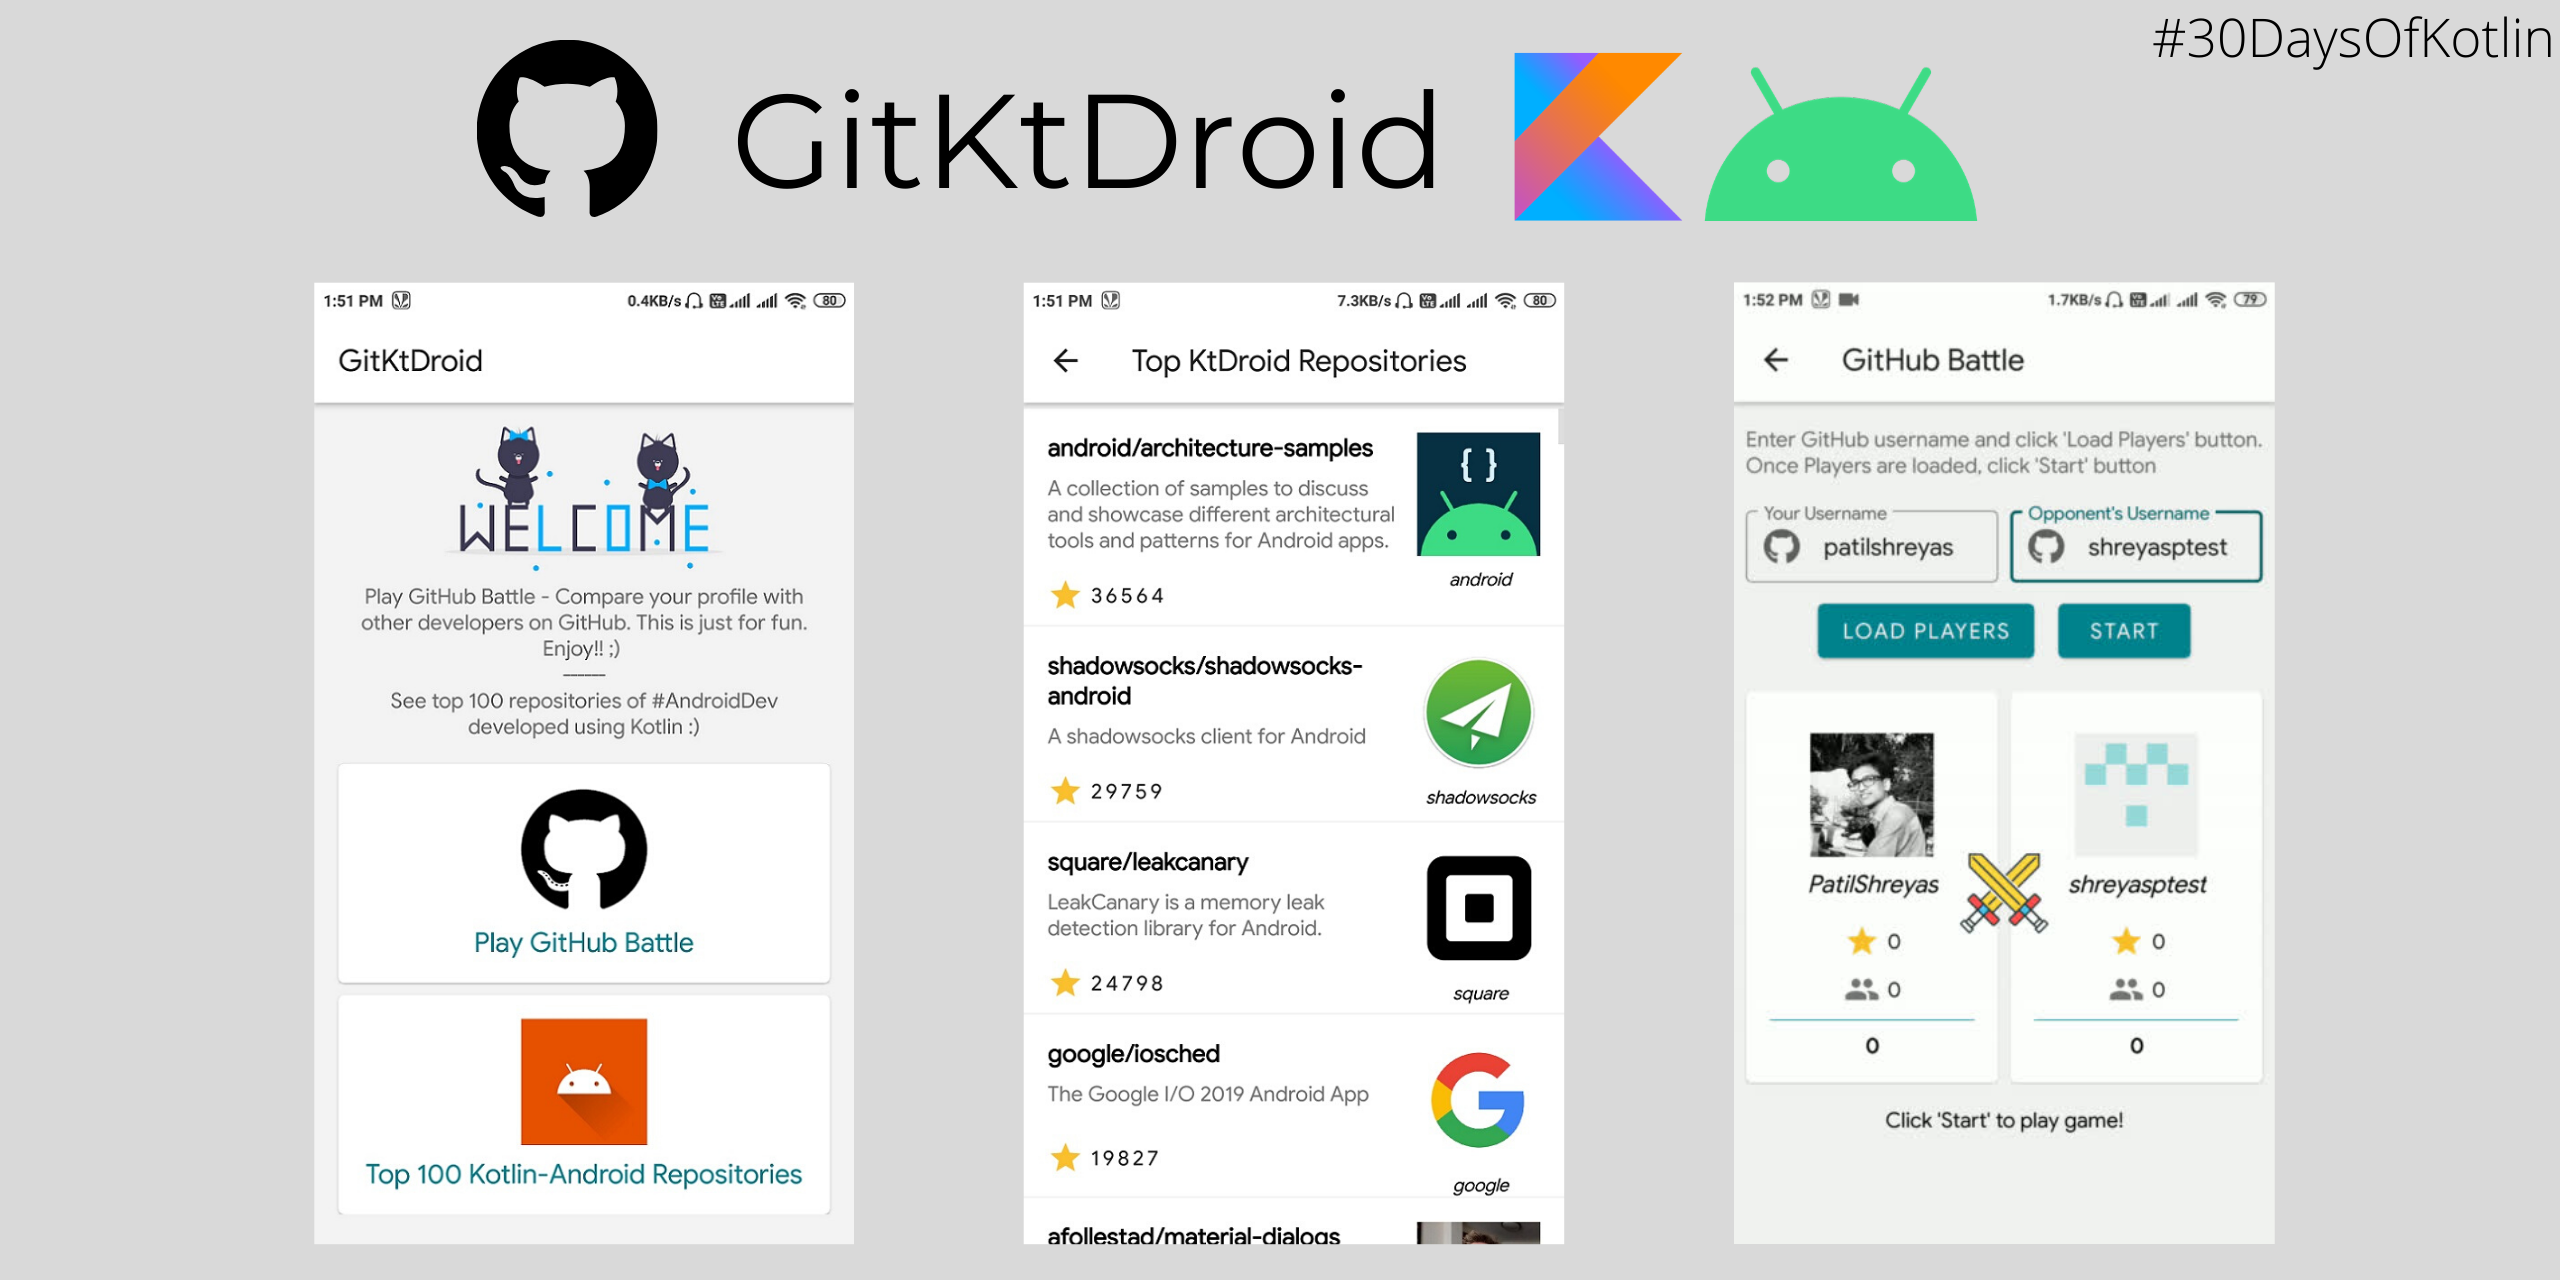 GitKtDroid App